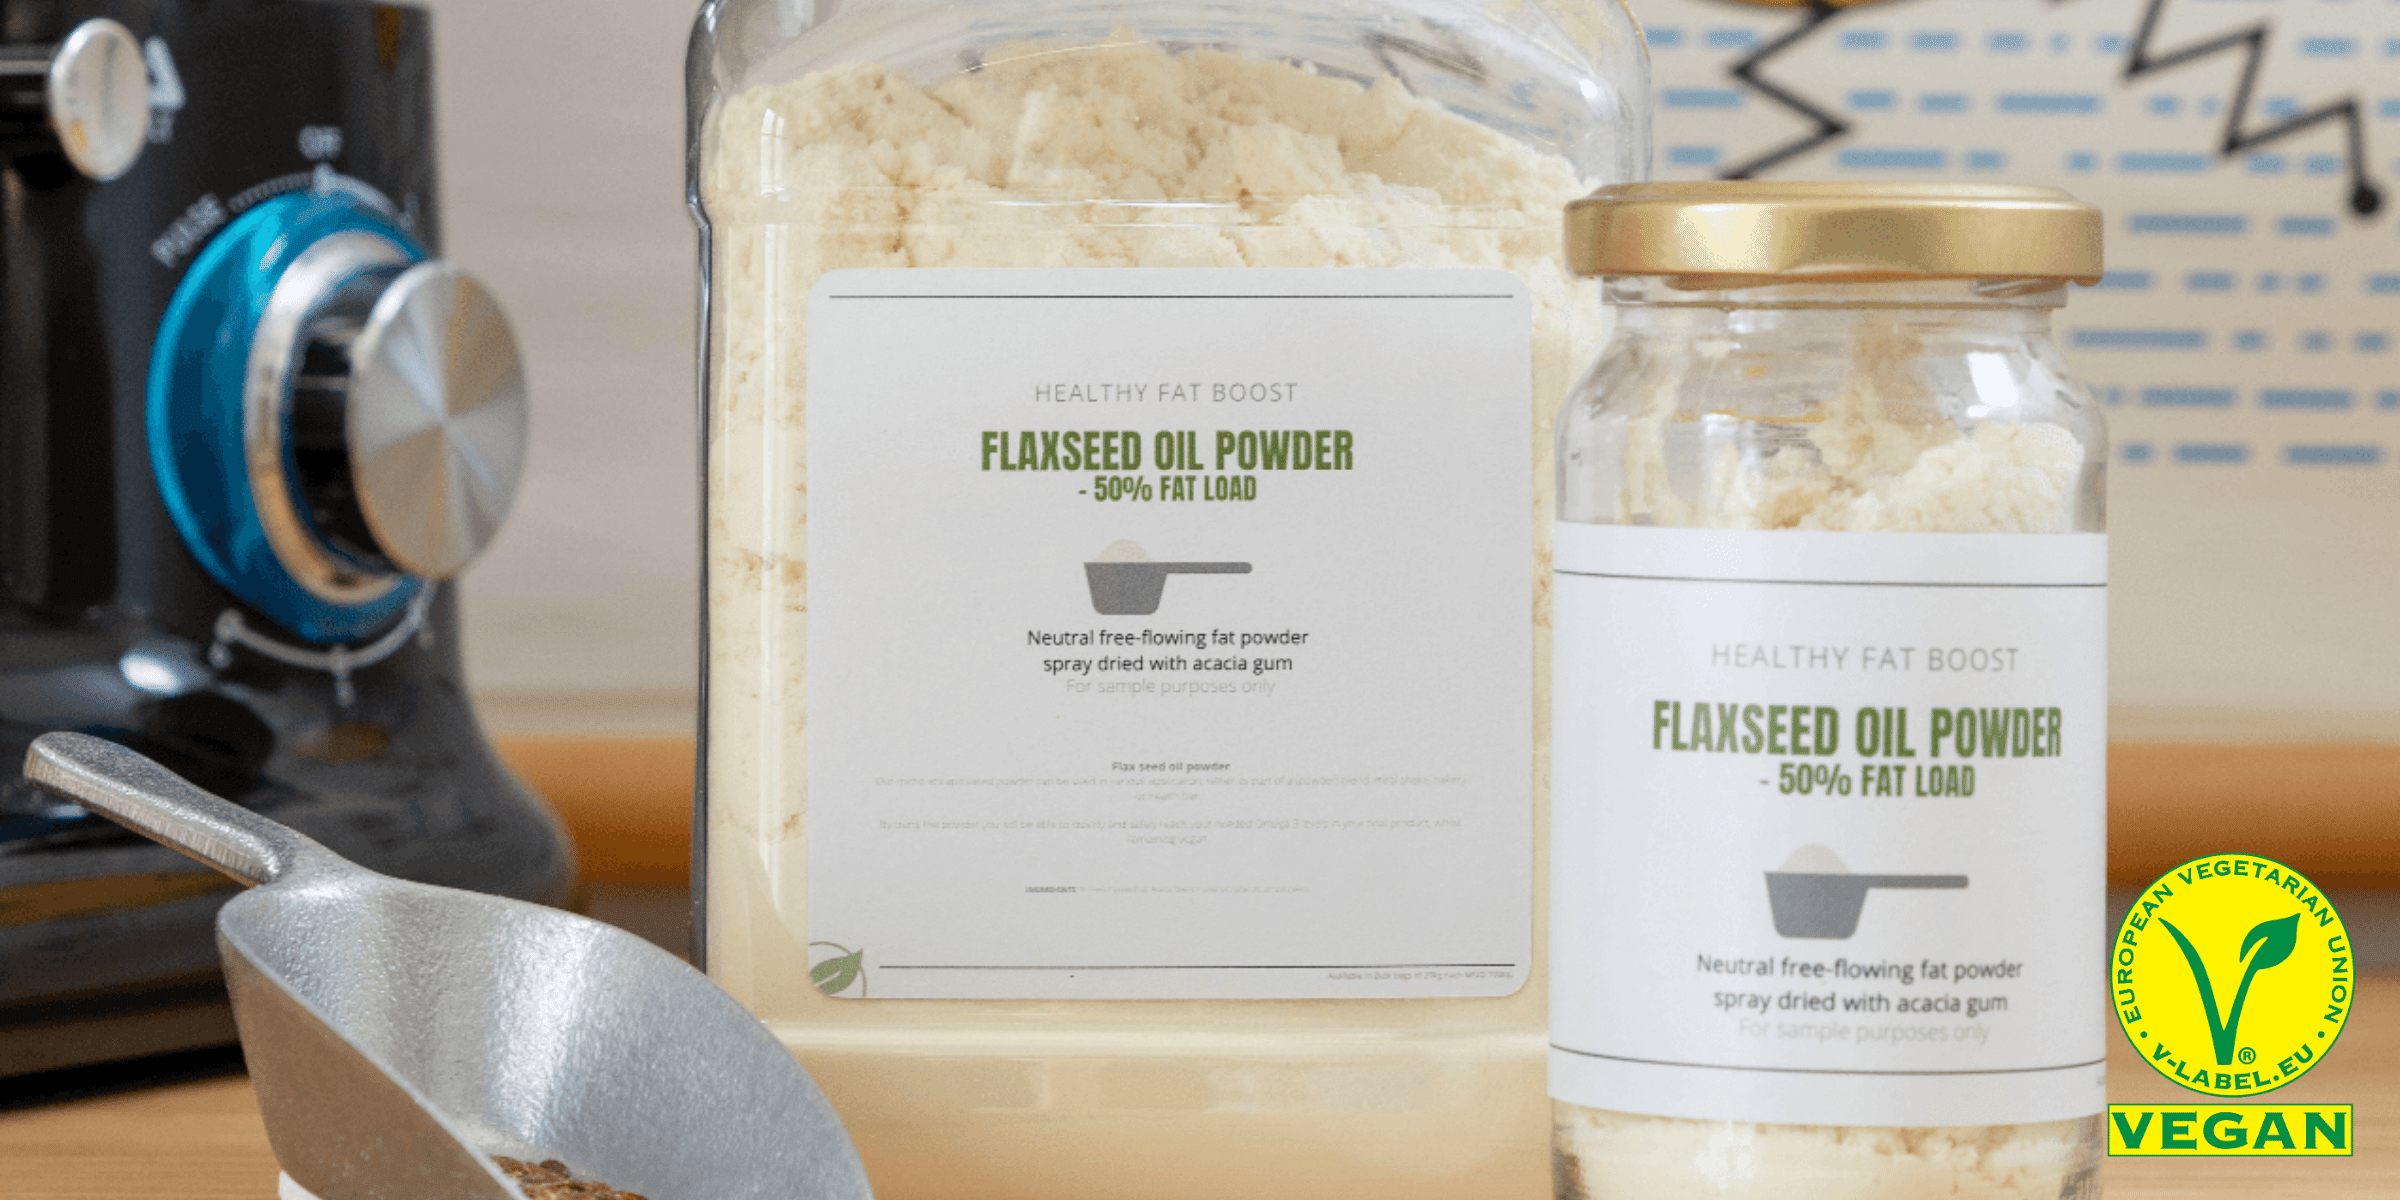  Flaxseed oil powder